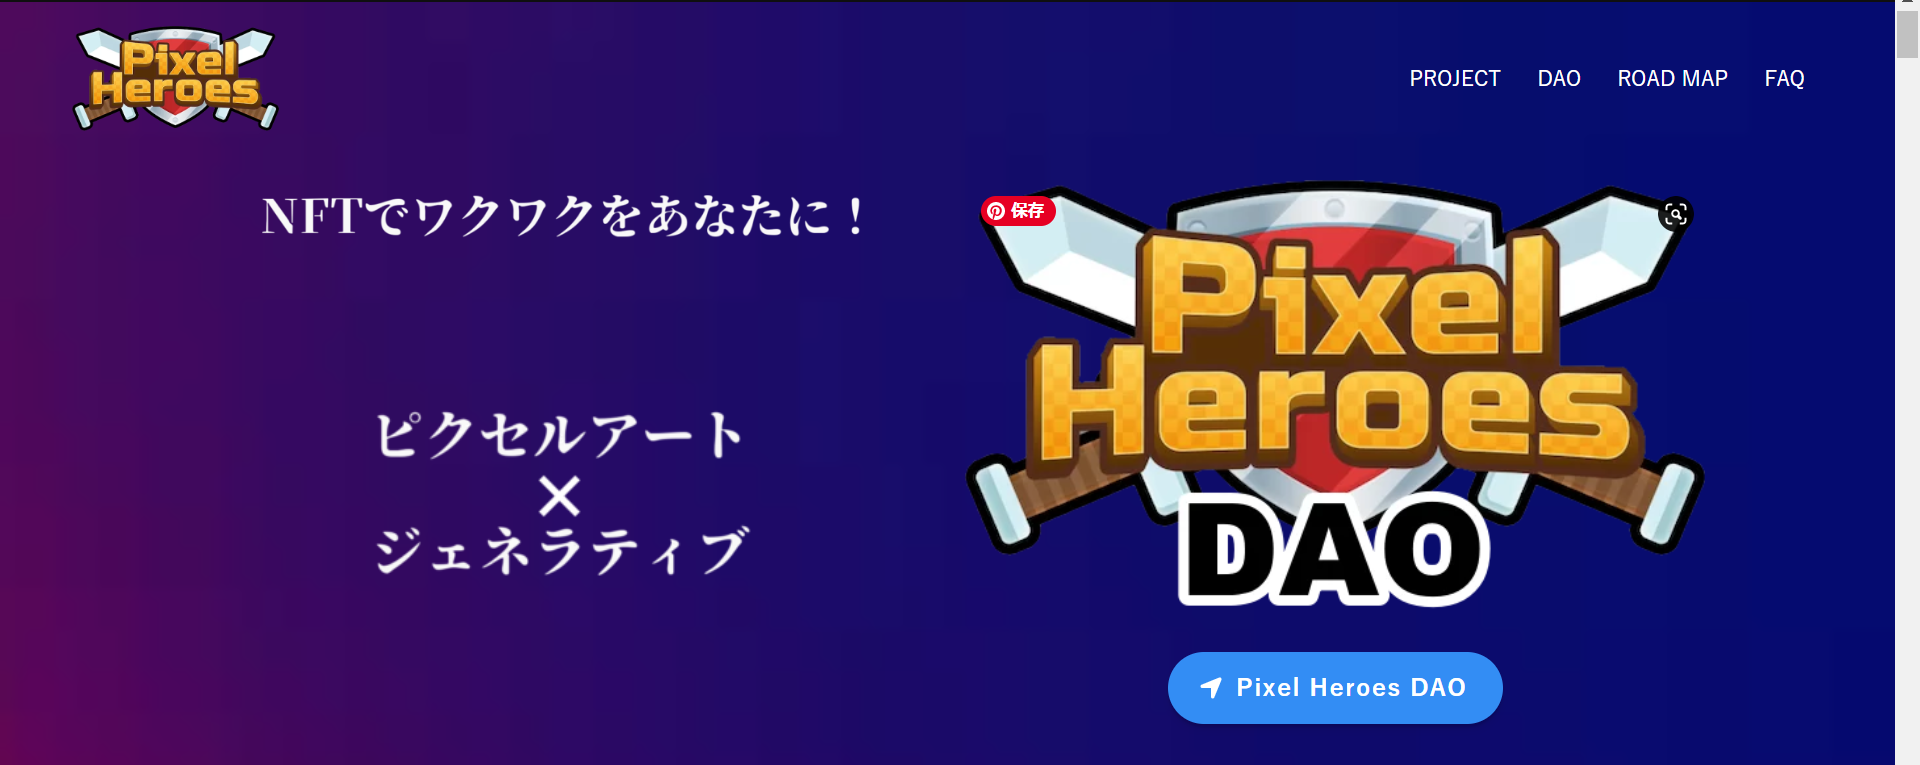 Pixel Heroes 今後のリリース